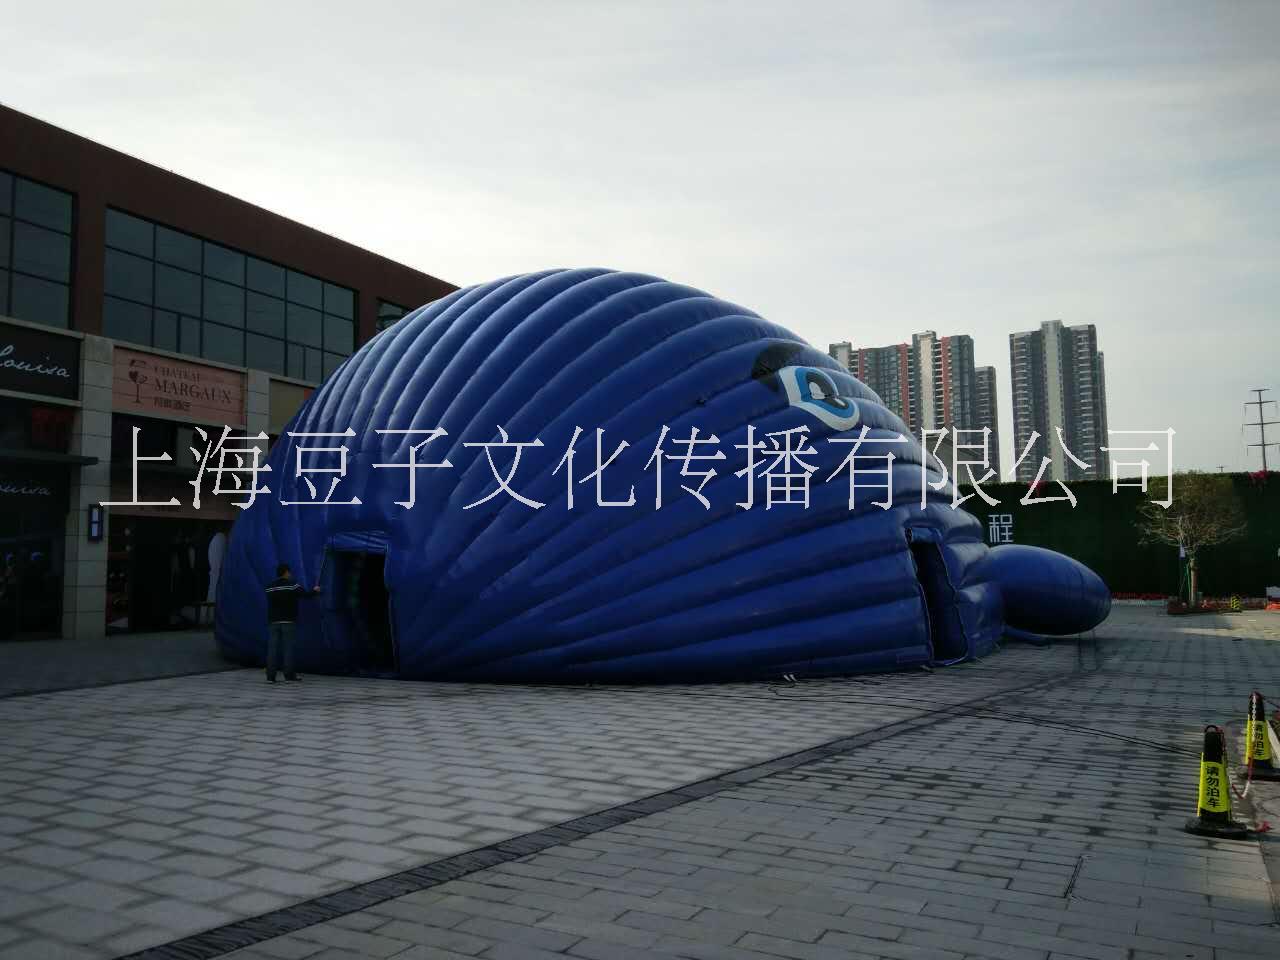 上海鲸鱼岛乐园展览租赁 鲸鱼岛气模 海洋球 鲸鱼岛